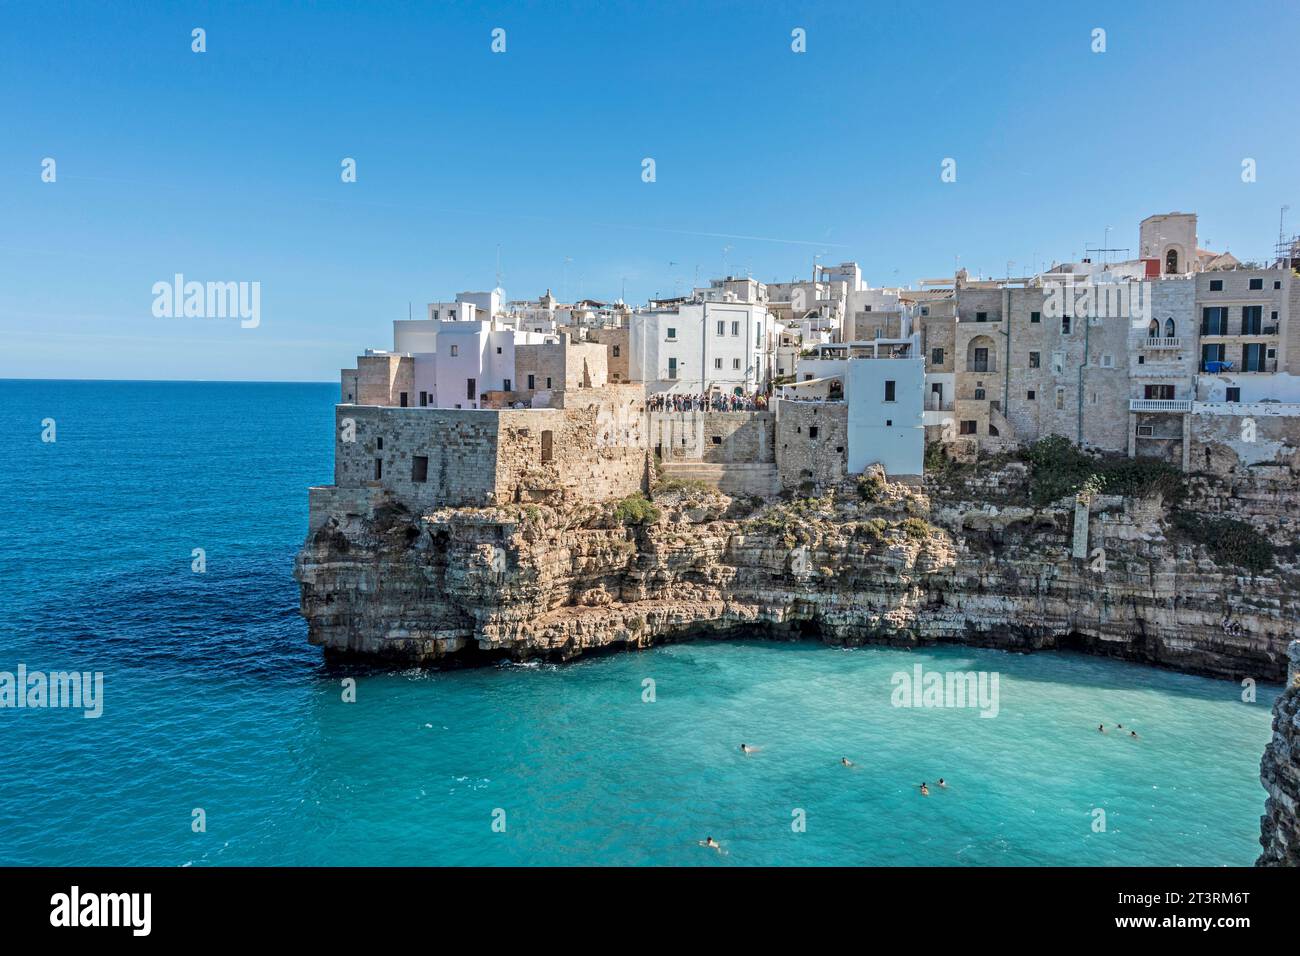 La città di Polignano a Mare, Italia, circondata dalle acque cristalline dell'Adriatico. Foto Stock